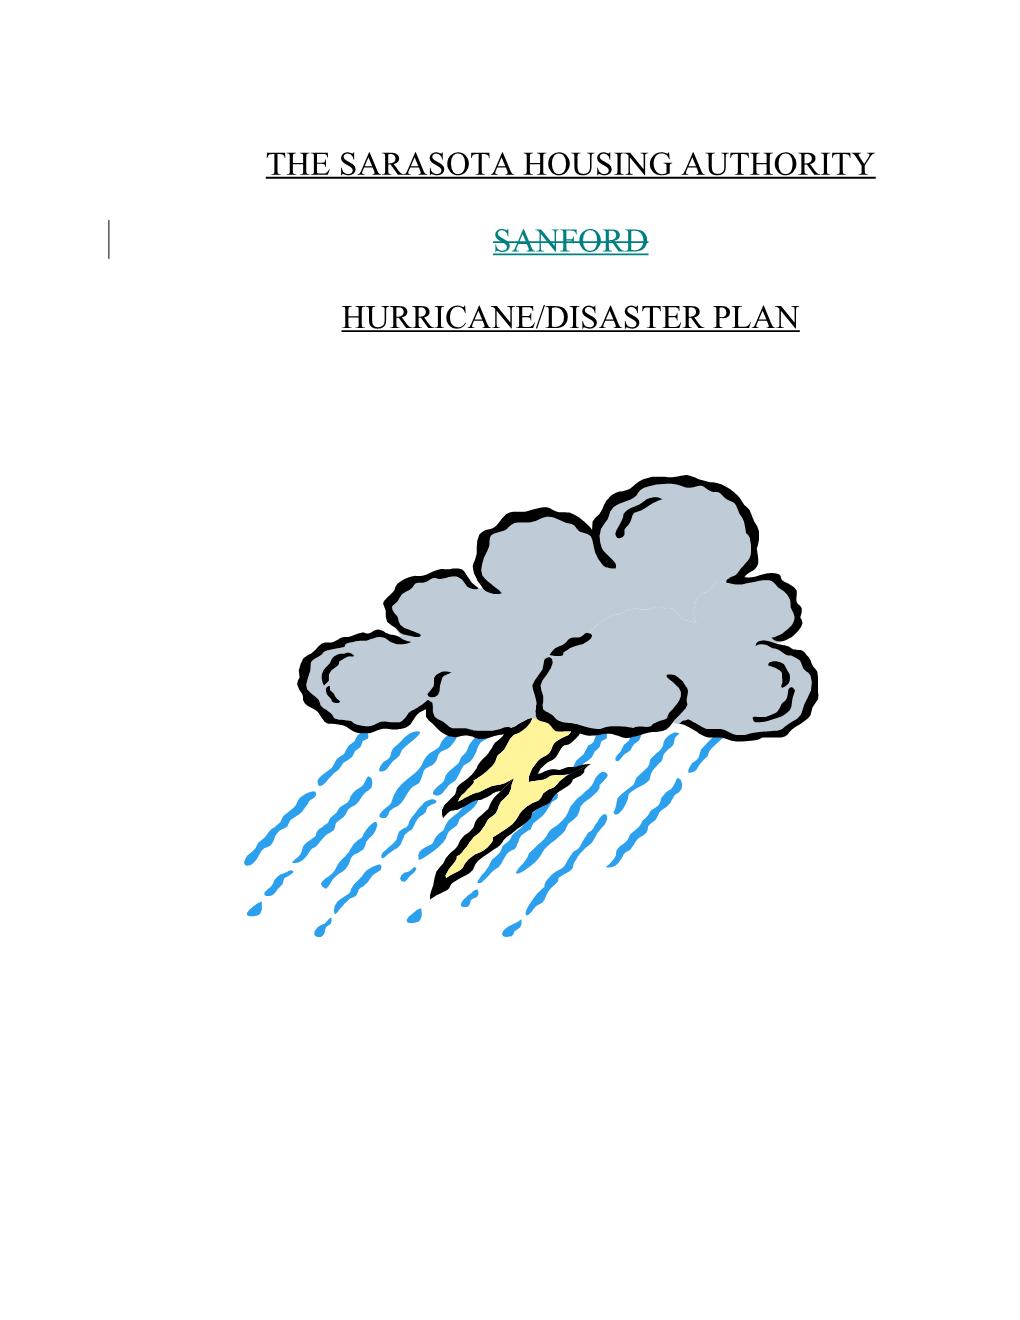 Hurrican/Disaster Plan